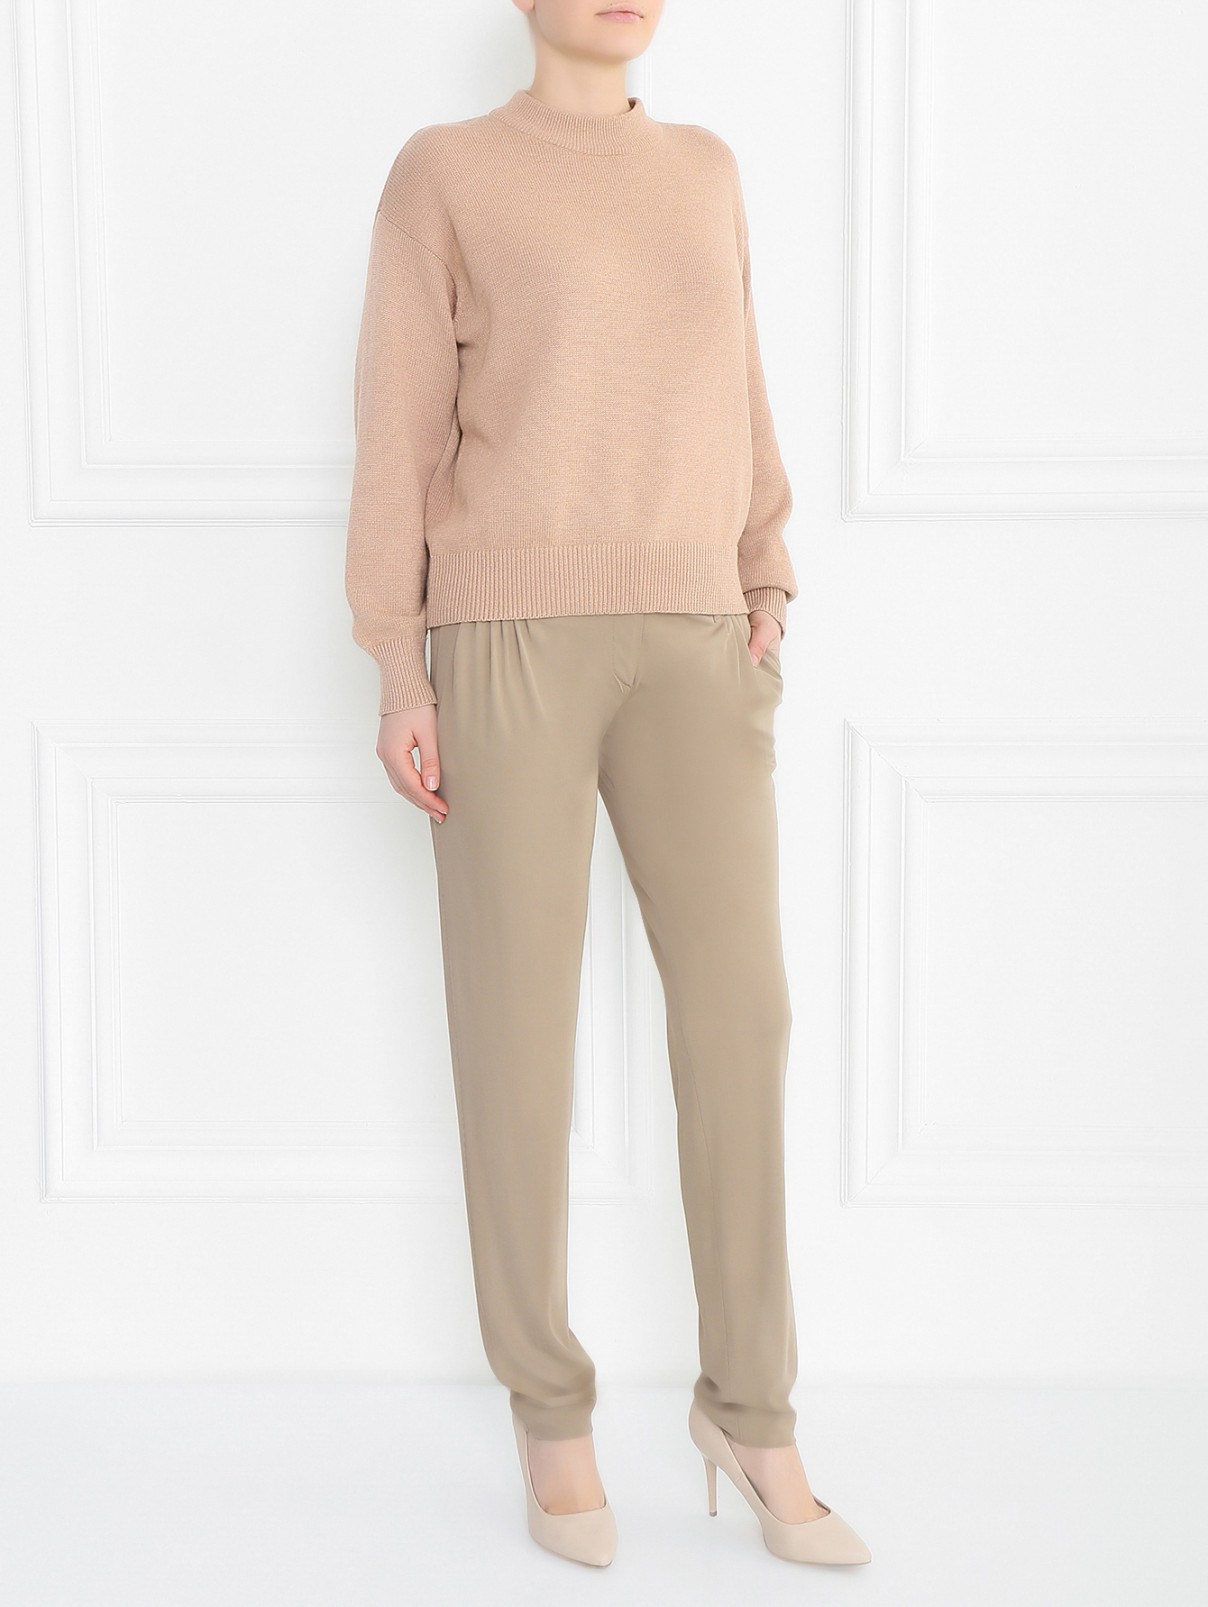 Трикотажные брюки свободного фасона Alberta Ferretti  –  Модель Общий вид  – Цвет:  Бежевый